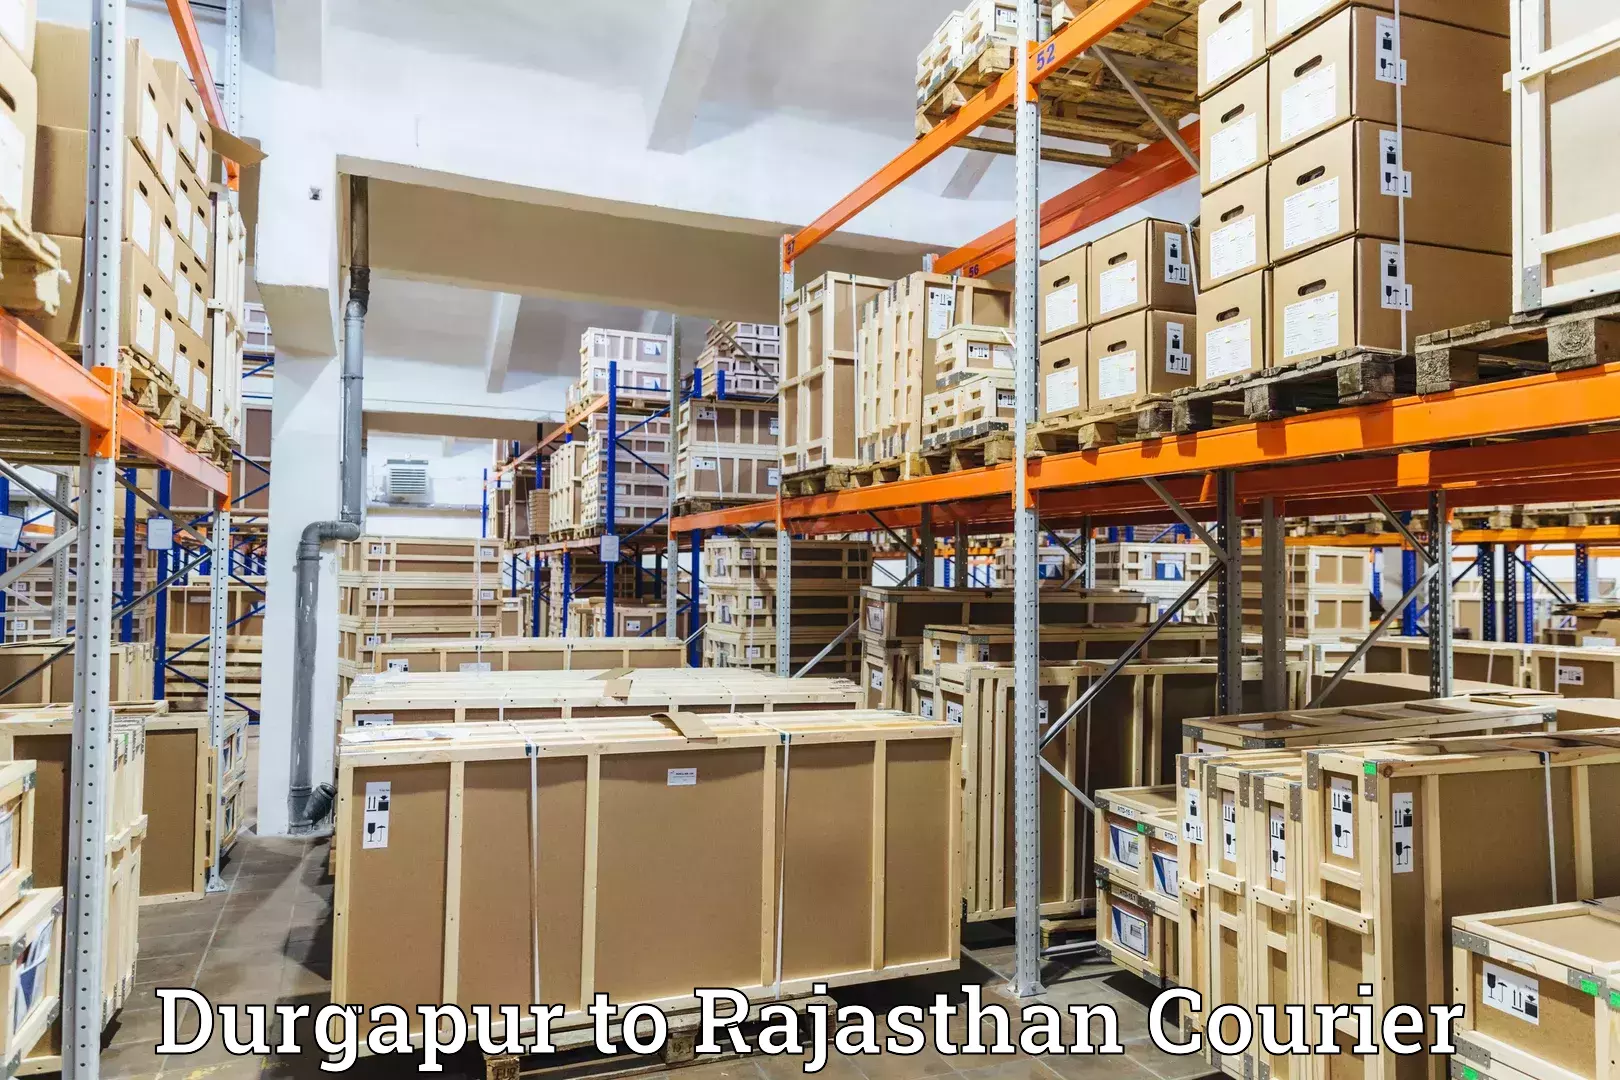 Delivery service partnership Durgapur to Nagaur